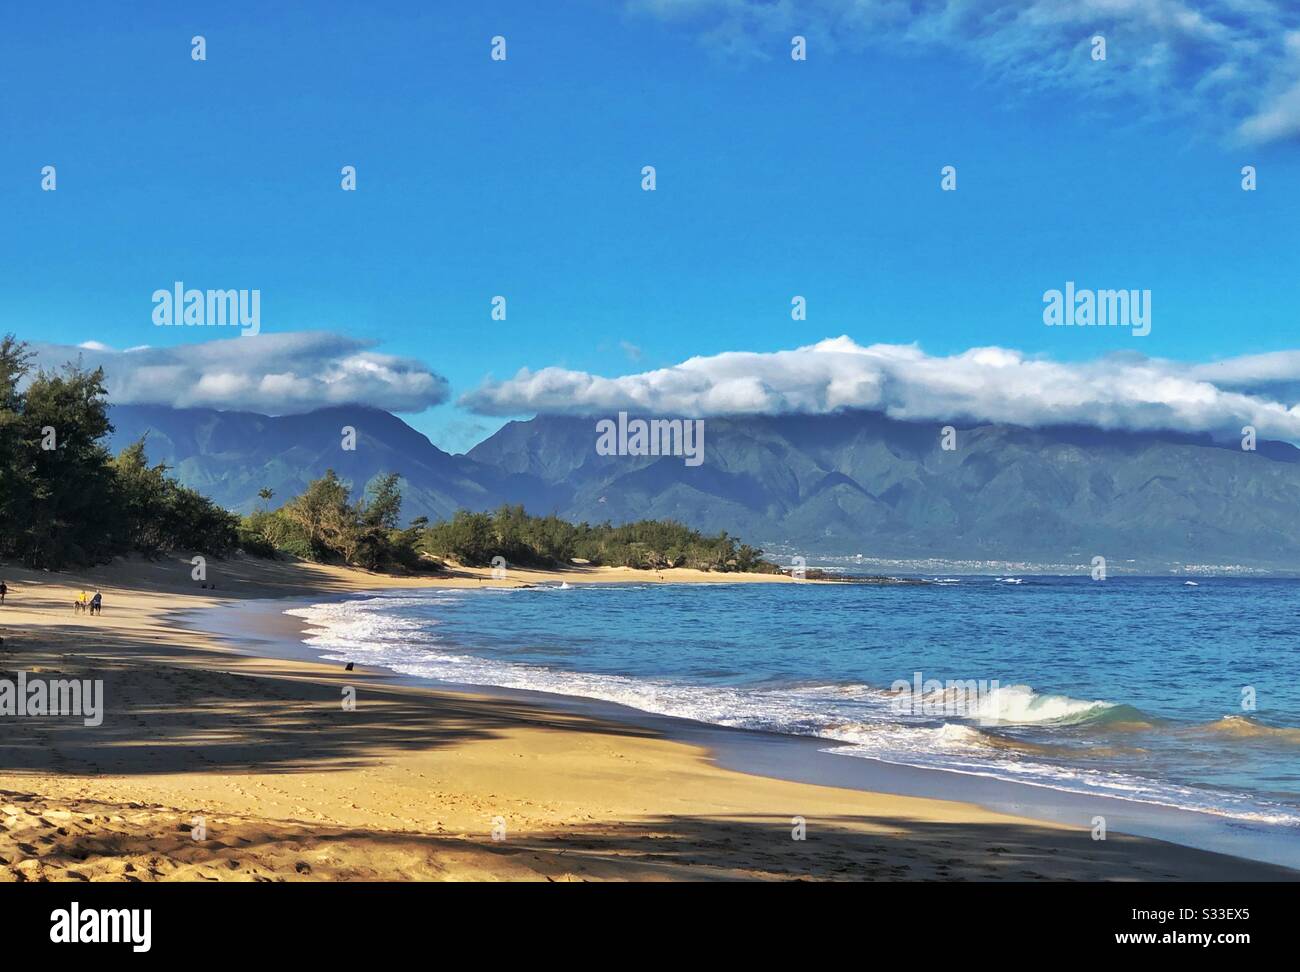 Baldwin Beach Park près de Paia sur l'île de Maui dans l'état d'Hawaï, États-Unis. Montagnes de l'ouest de Maui et vallée d'Iao en arrière-plan. Banque D'Images